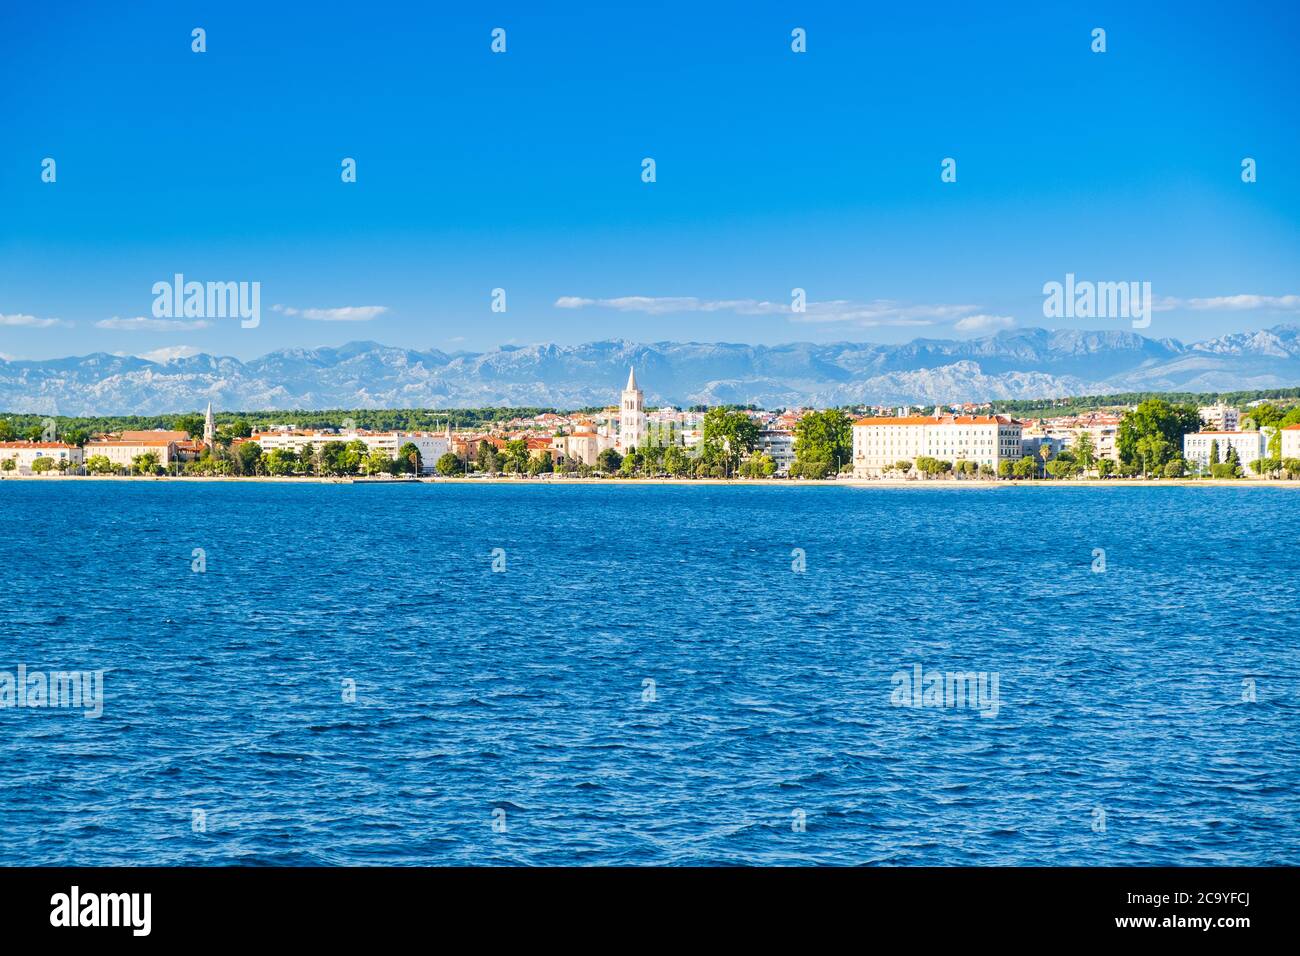 La Croatie, la ville de Zadar, vue panoramique des eighties de mer. Zadar est une destination touristique célèbre de la côte à la mer Adriatique. Banque D'Images